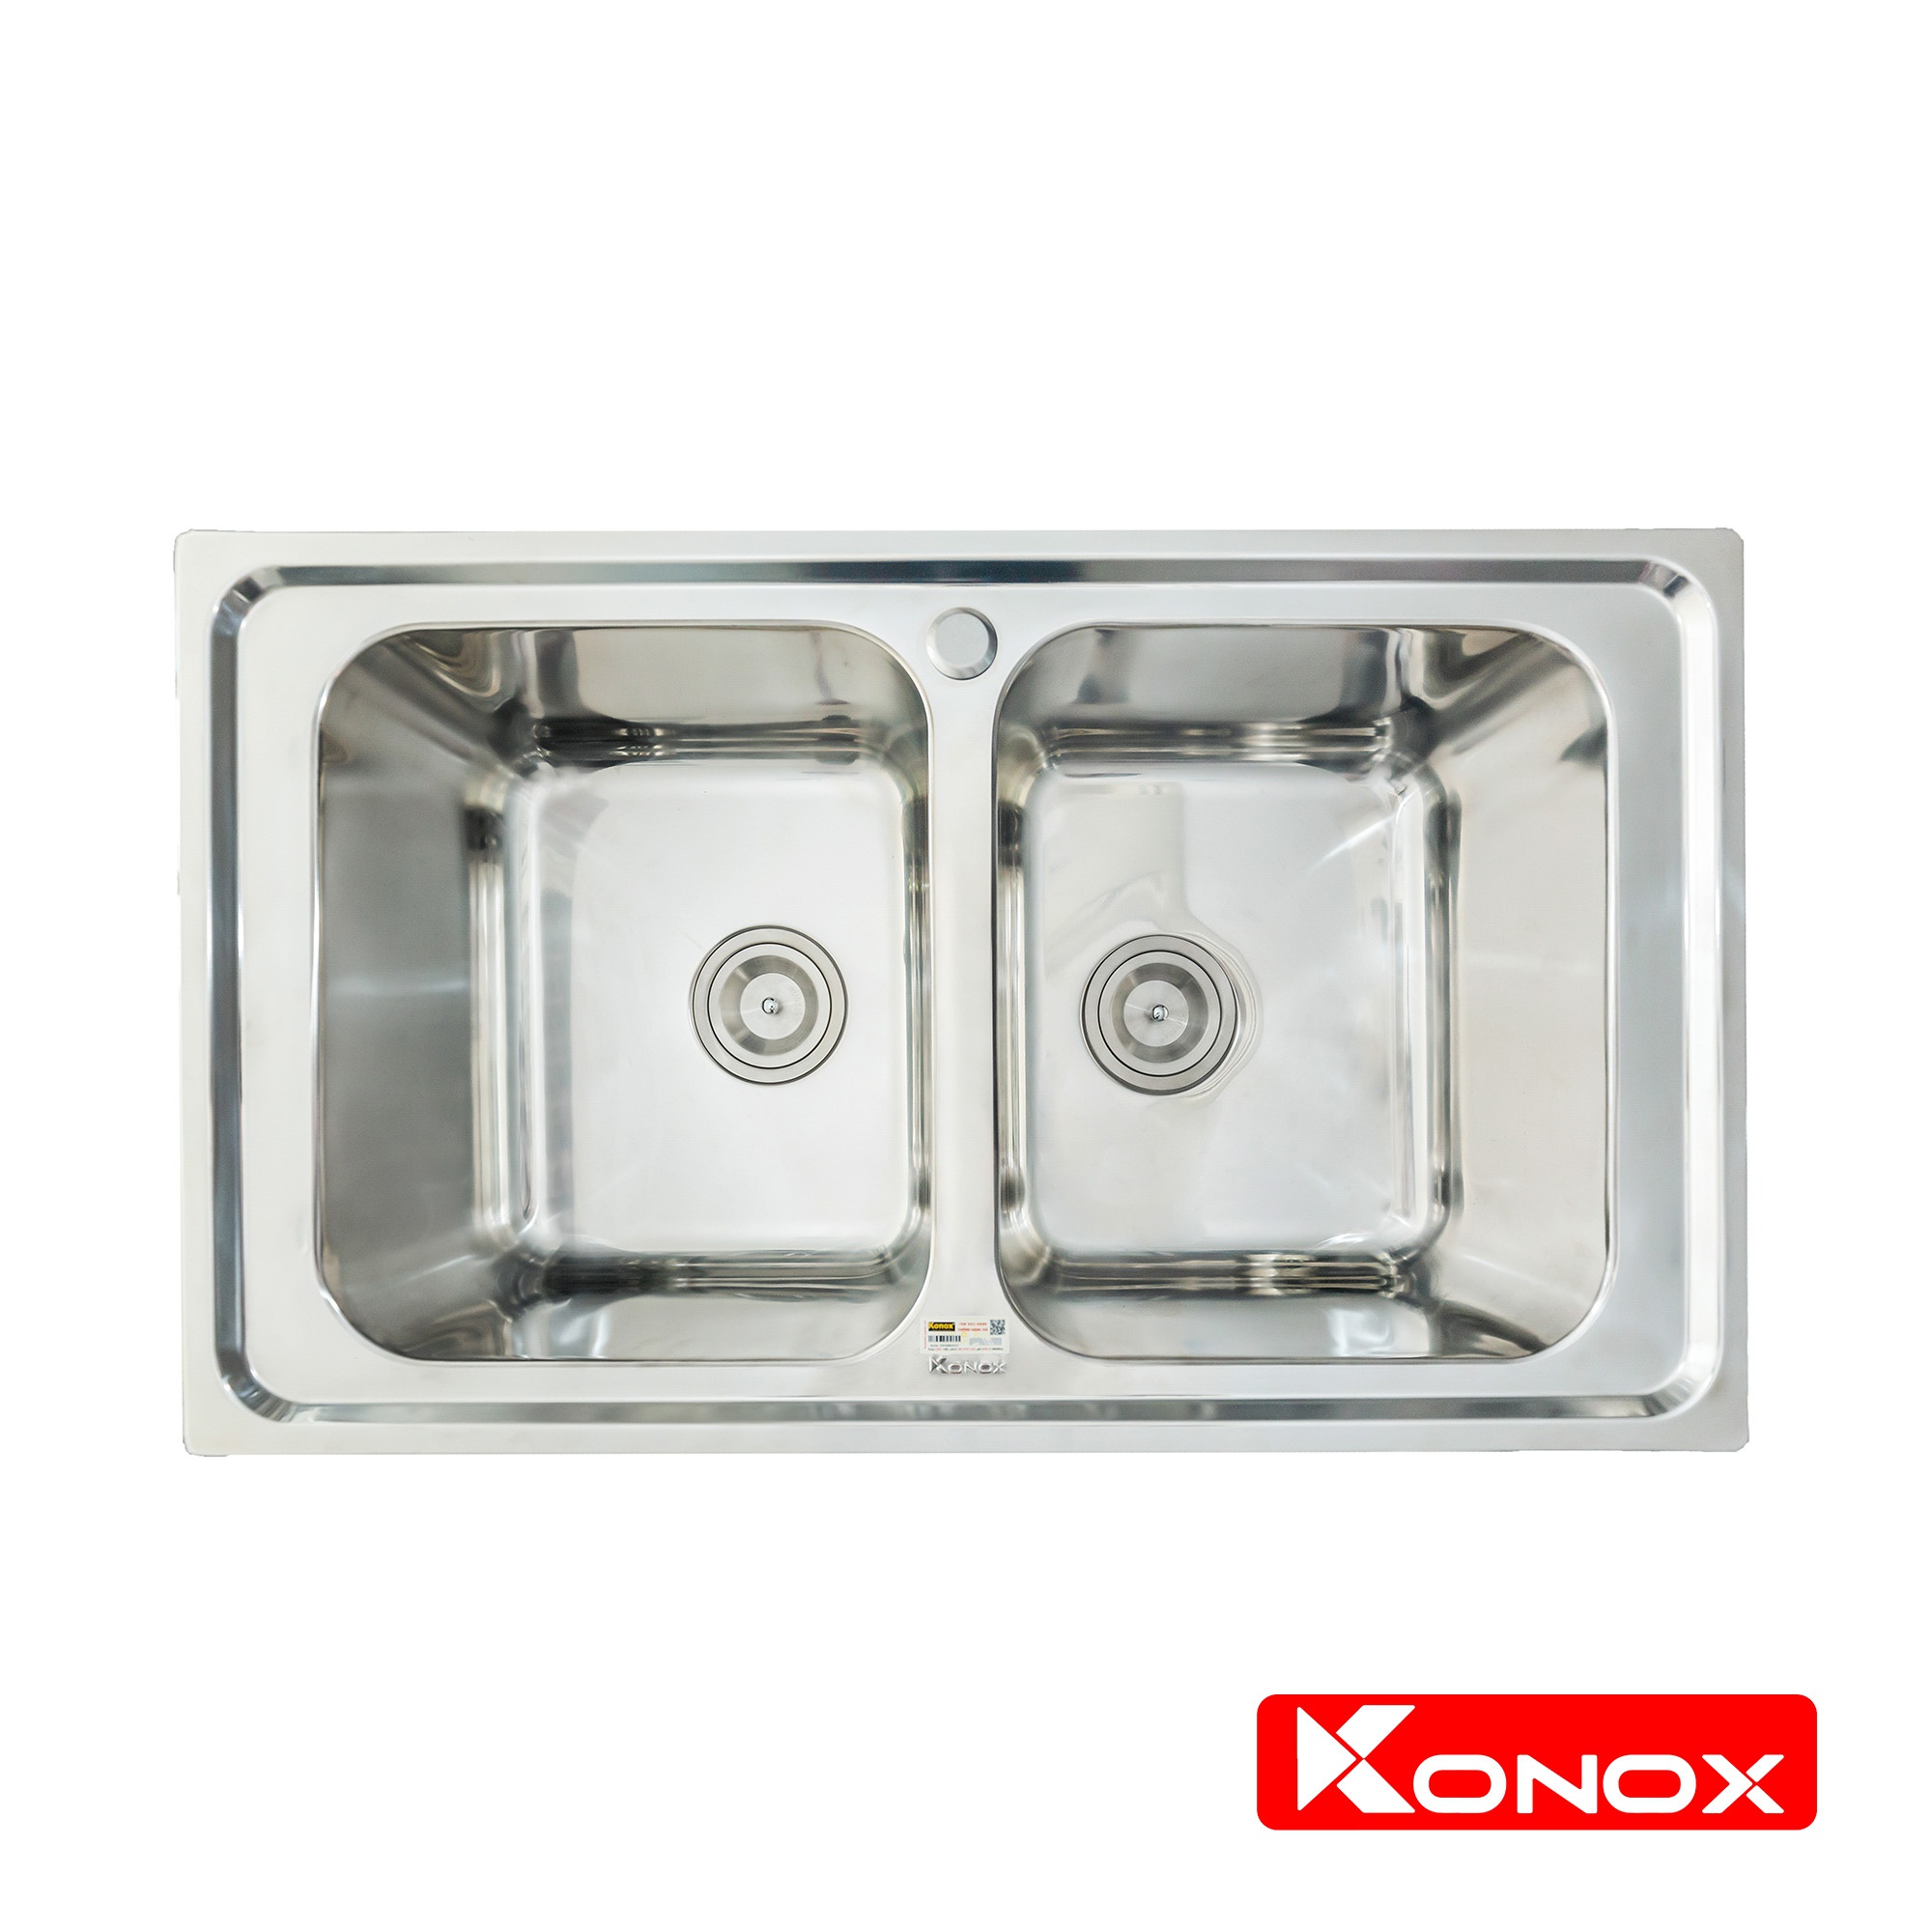 Chậu rửa Konox - Premium KS8650 2B